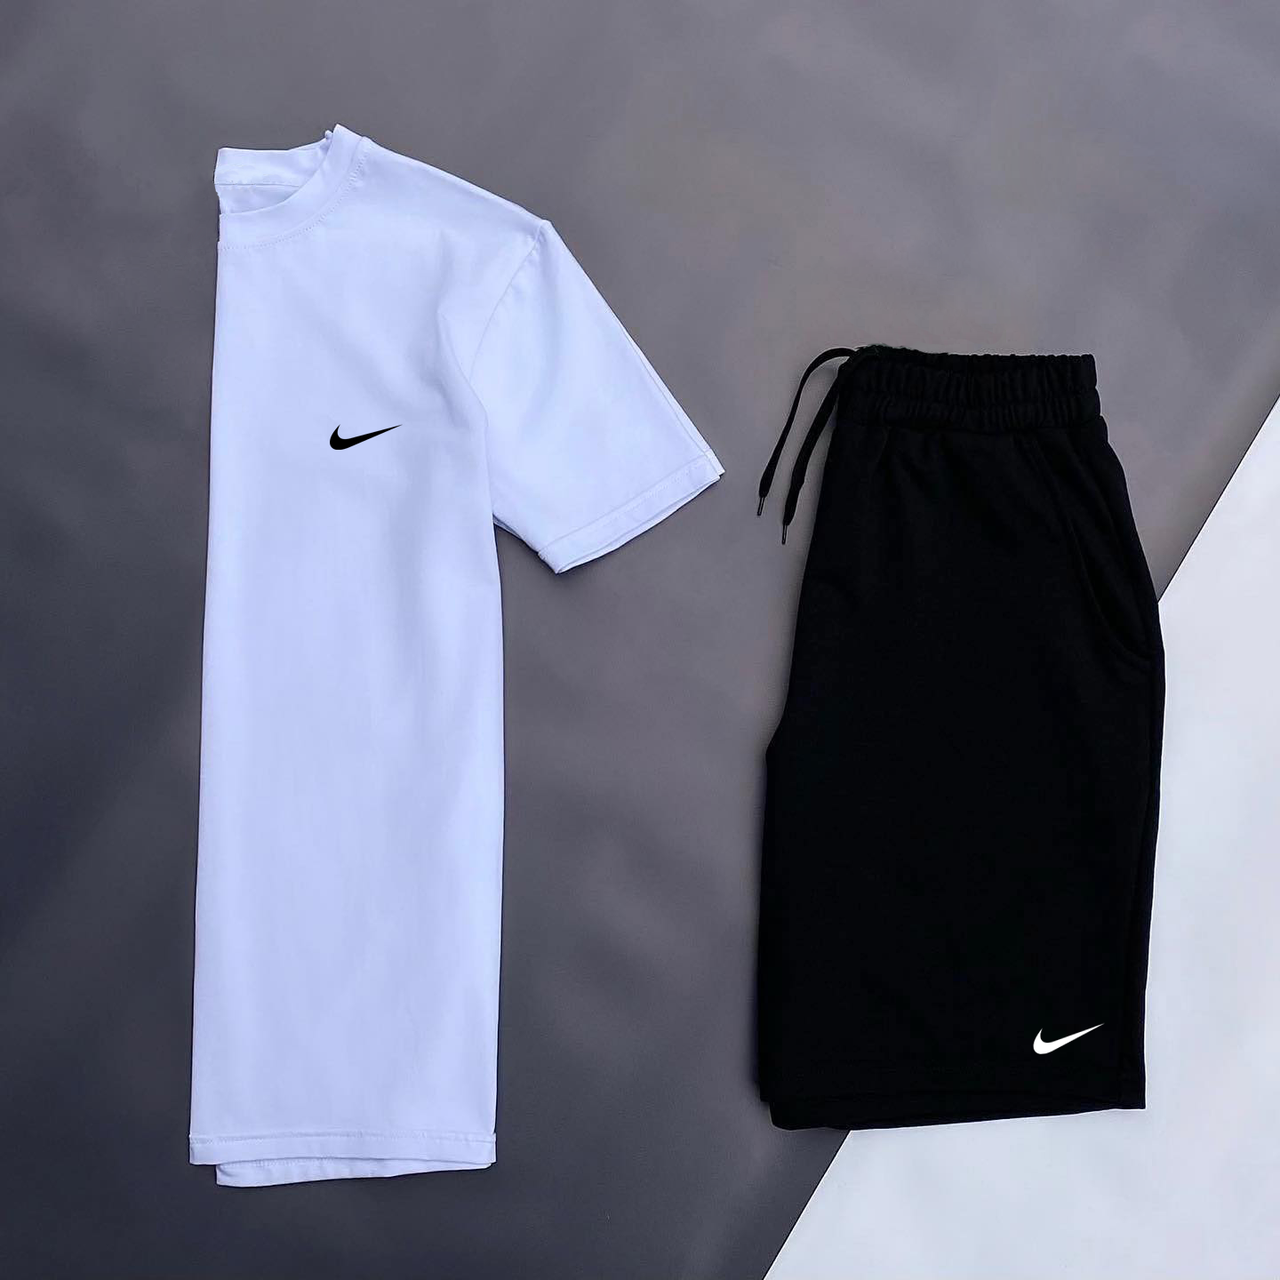 Футболка та шорти Найк (Nike) біла футболка чорні шорти